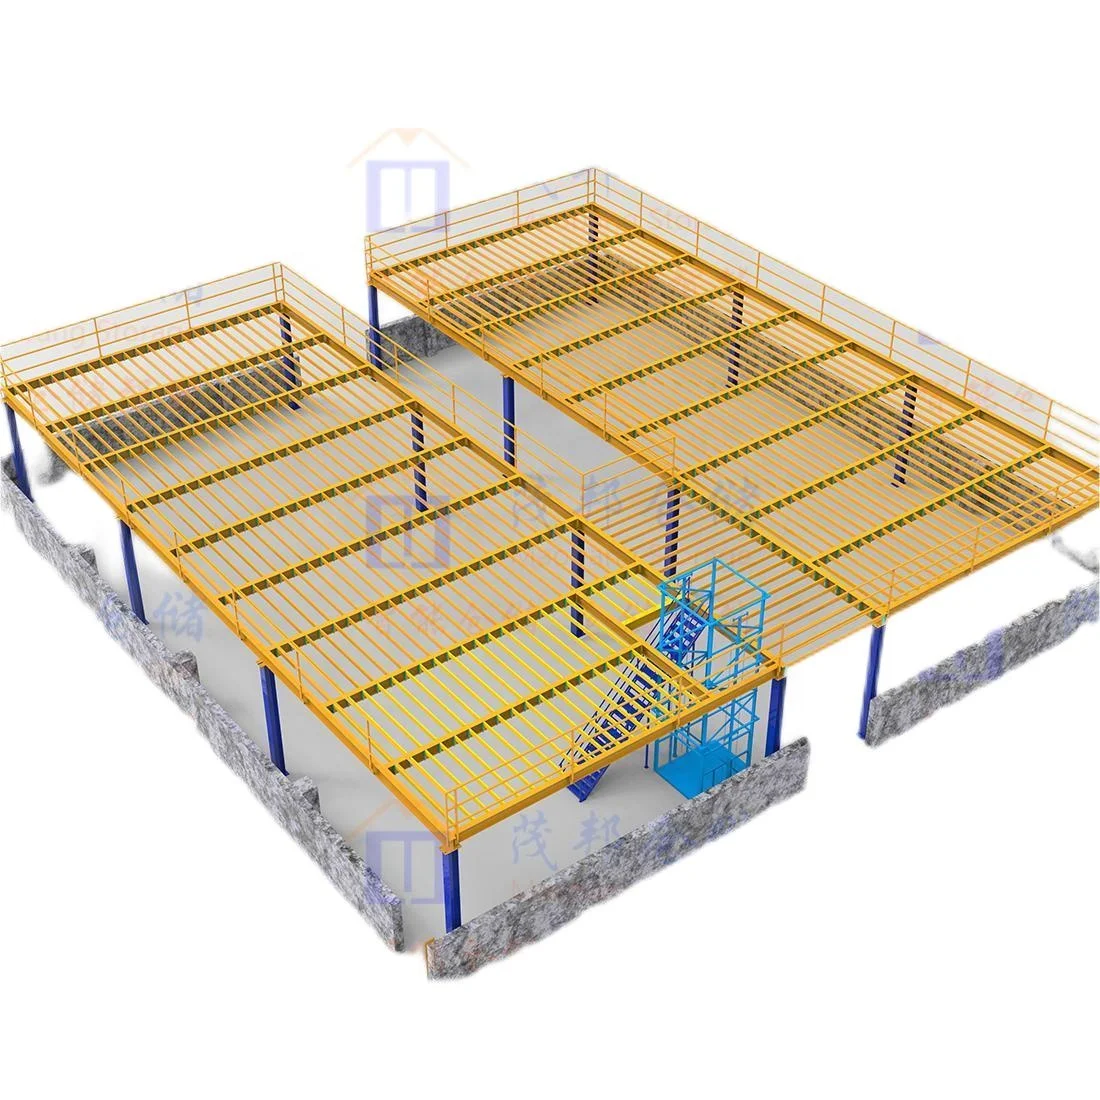 Merakit platform mezzanine gudang platform sistem rak penyimpanan industri tugas berat rak penyimpanan gudang berkualitas tinggi